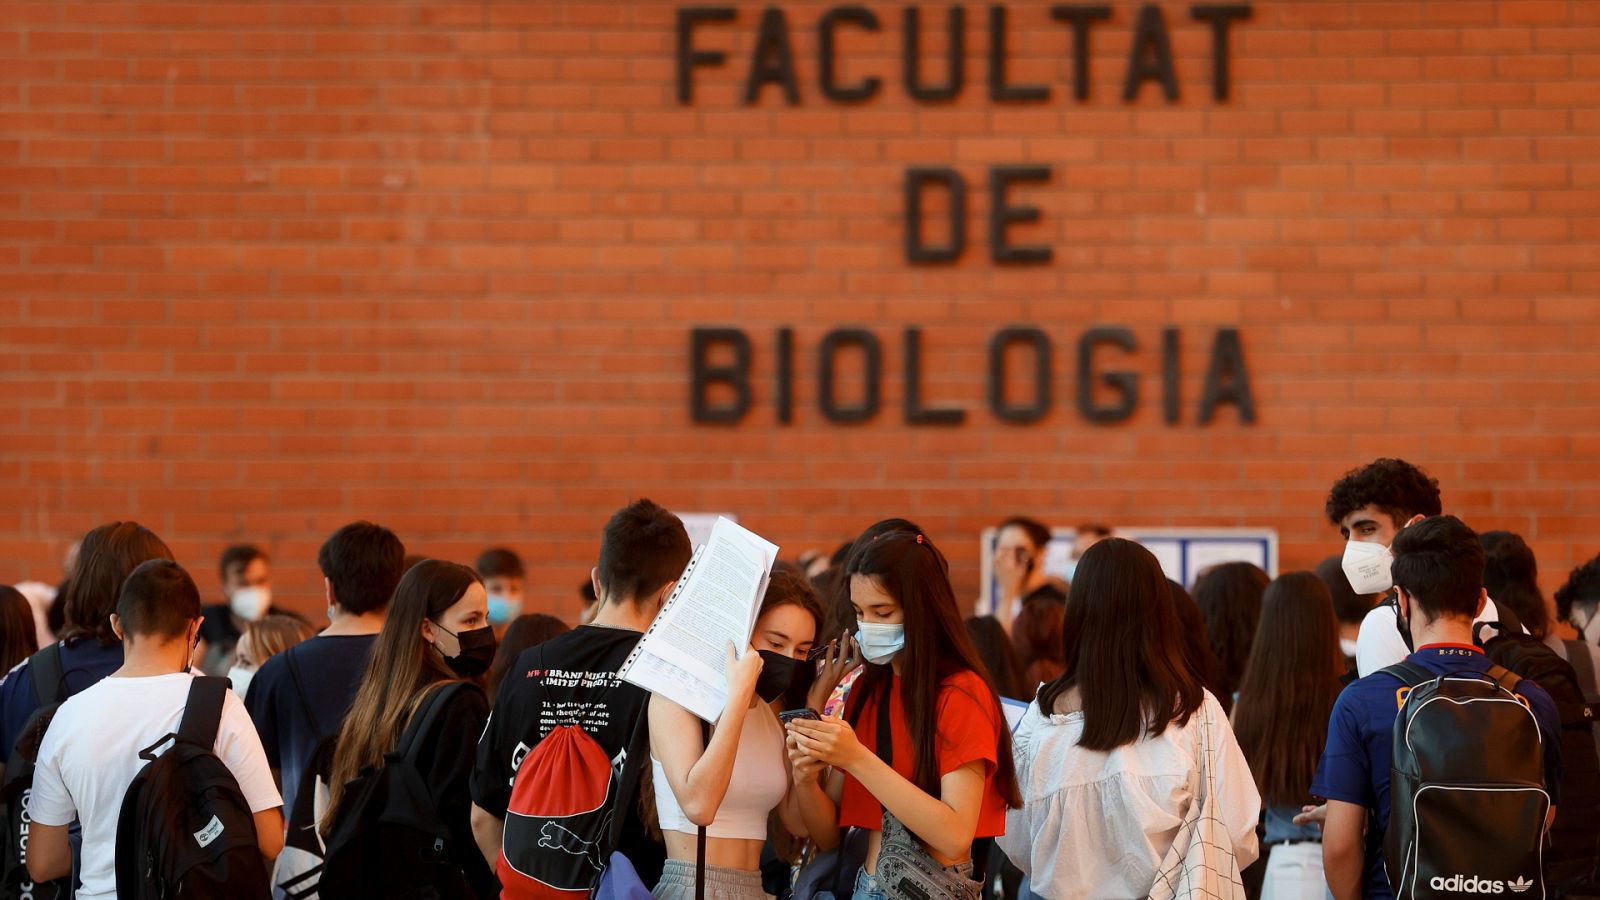 Estudiantes aguardan para examinarse en la Facultad de Biología de la Universitat de Barcelona